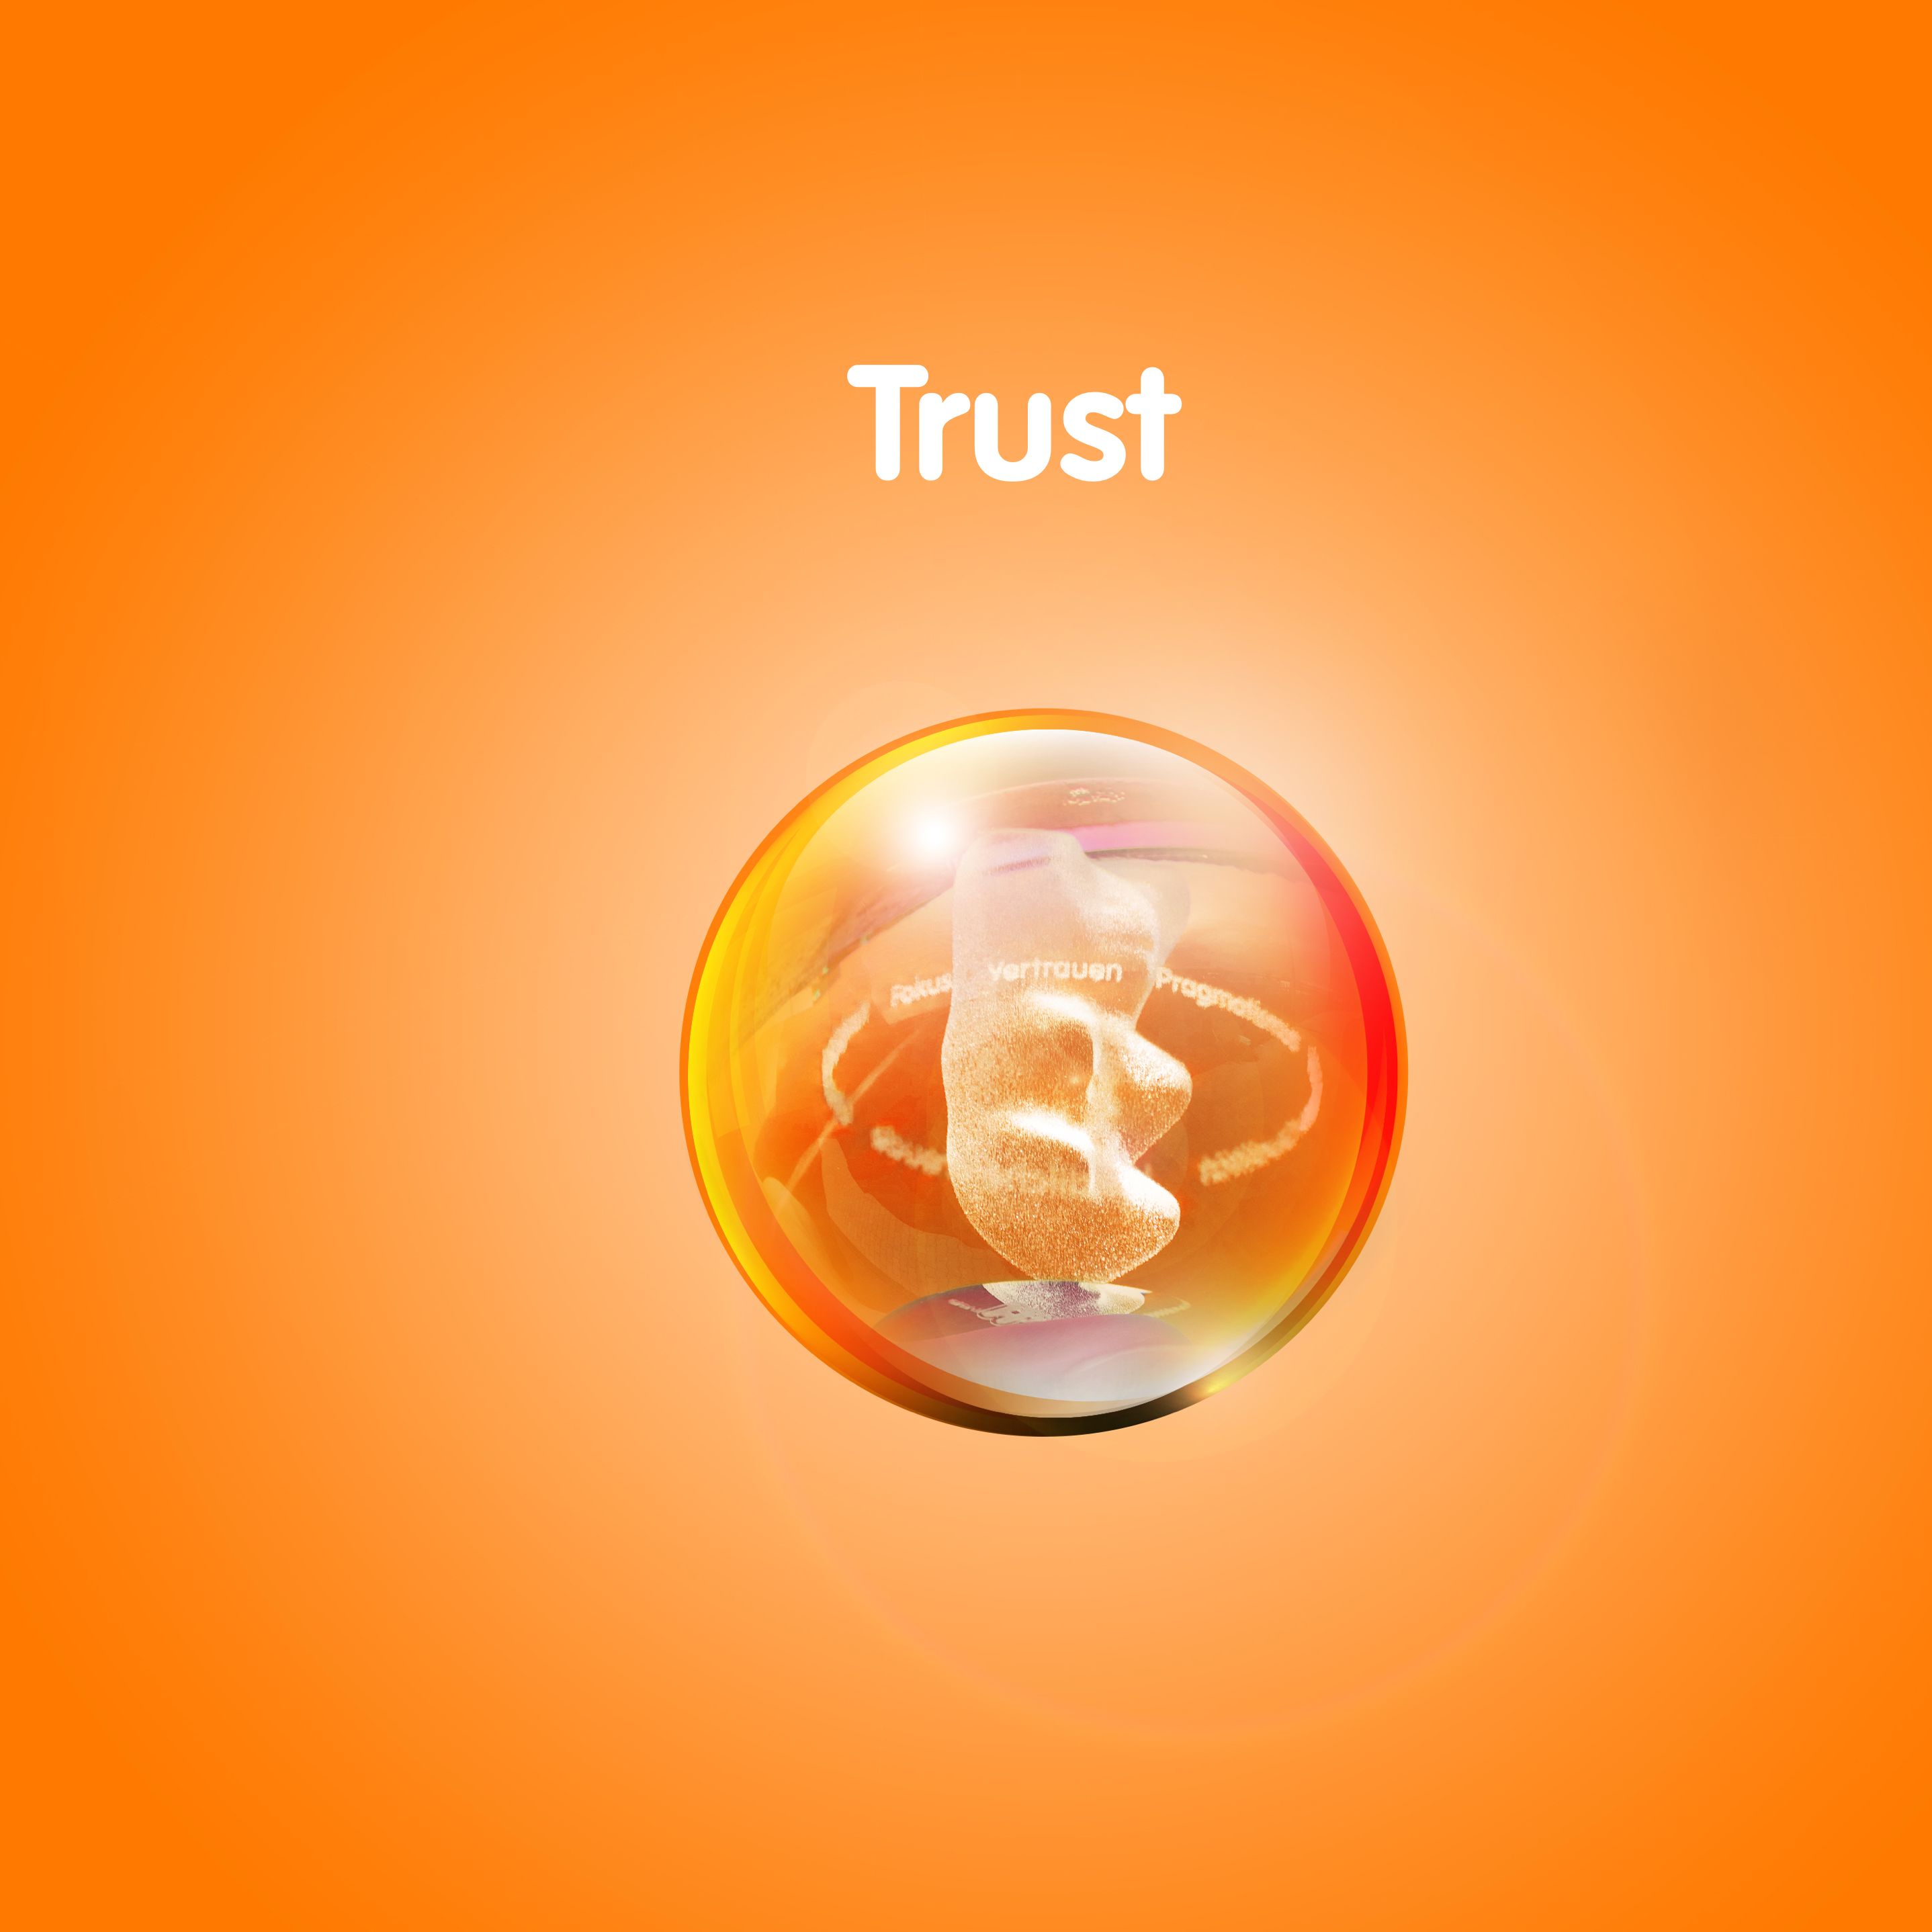 رسم محتو على دب ذهبي في كرة شفافة أمام خلفية برتقالية مع النص: "الثقة"